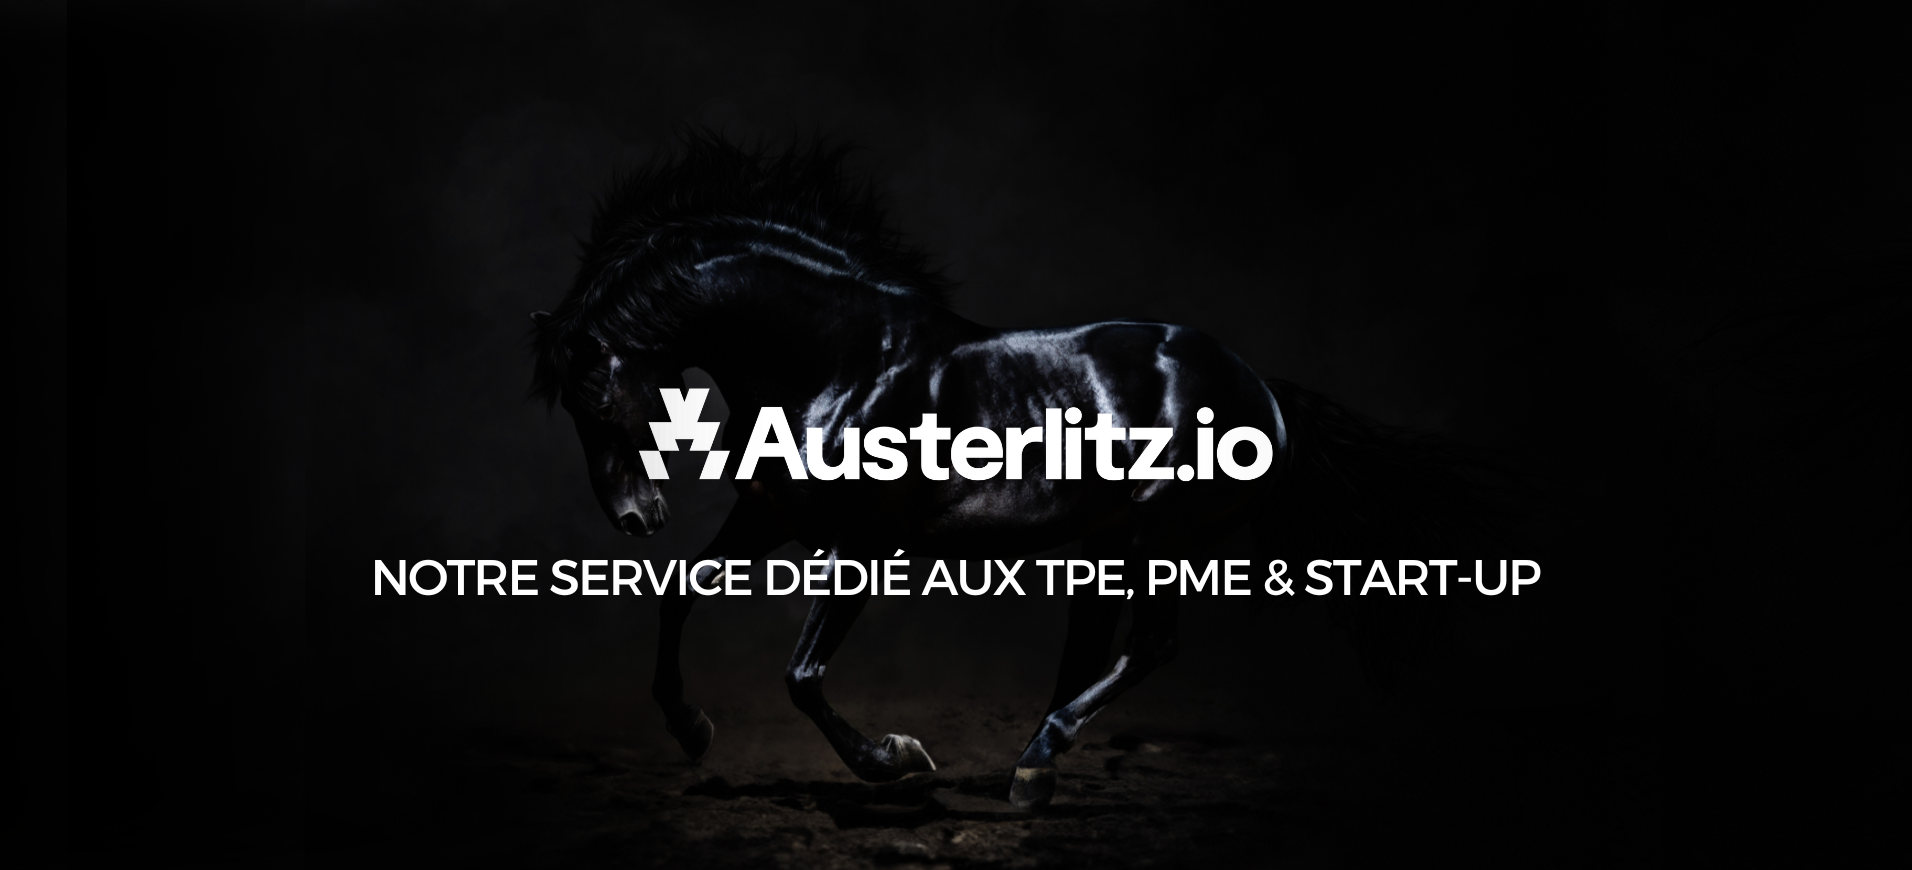 Austerlitz.io notre service dédié aux TPE, PME & start-up